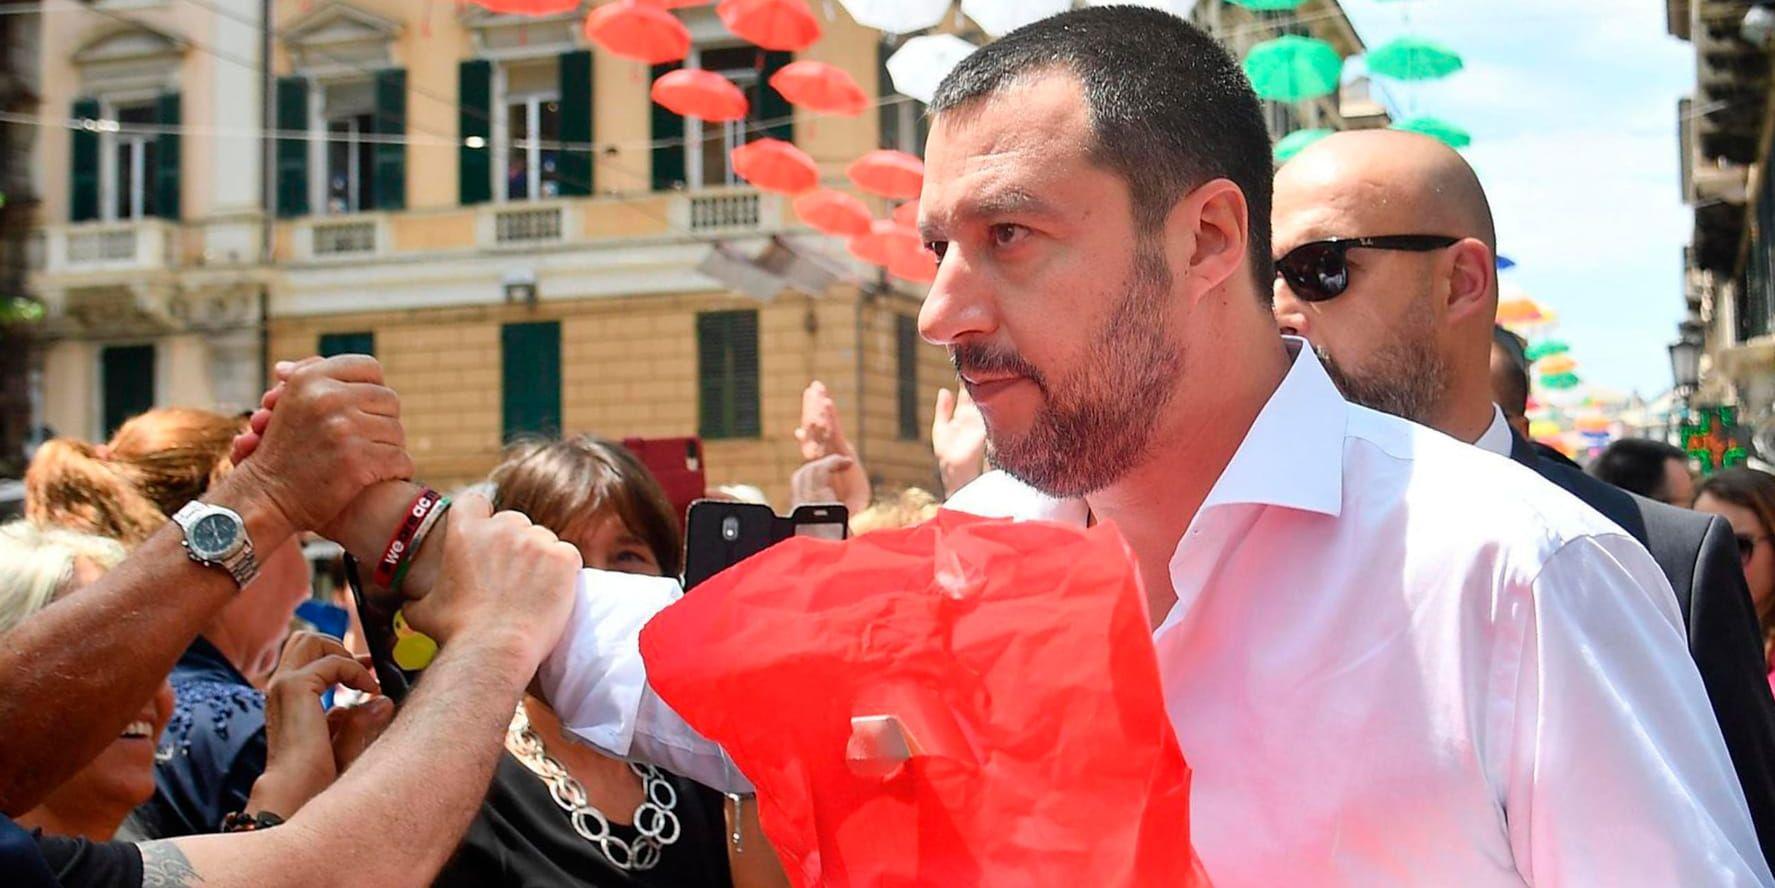 Italiens inrikesminister Matteo Salvini vill registrera alla romer i landet och utvisa icke-italienare. Arkivbild.